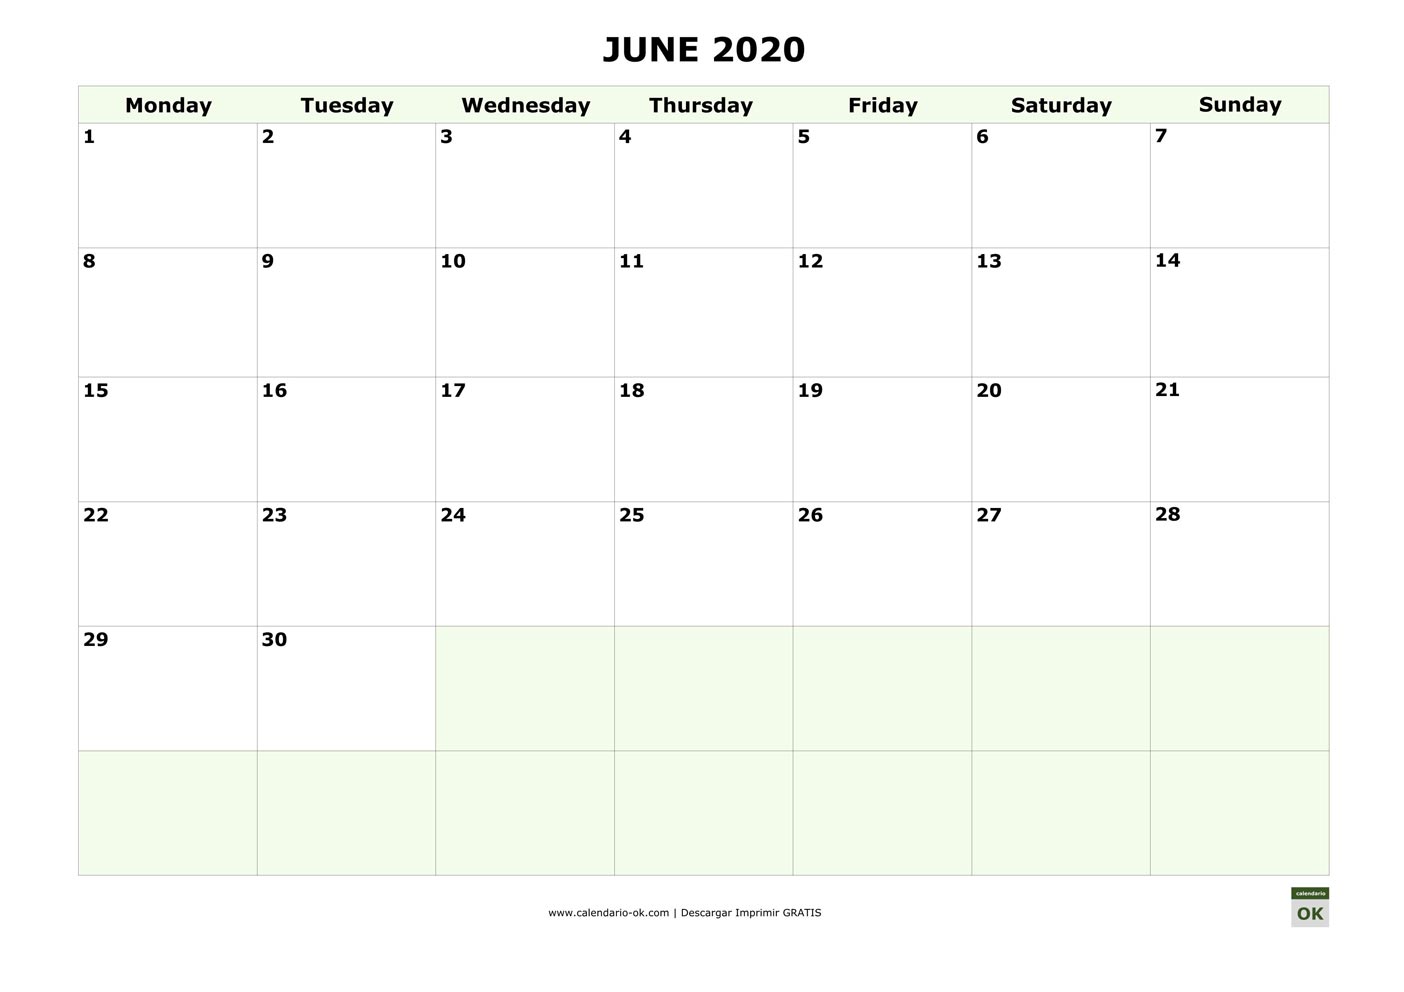 JUNIO 2020 calendario en INGLES